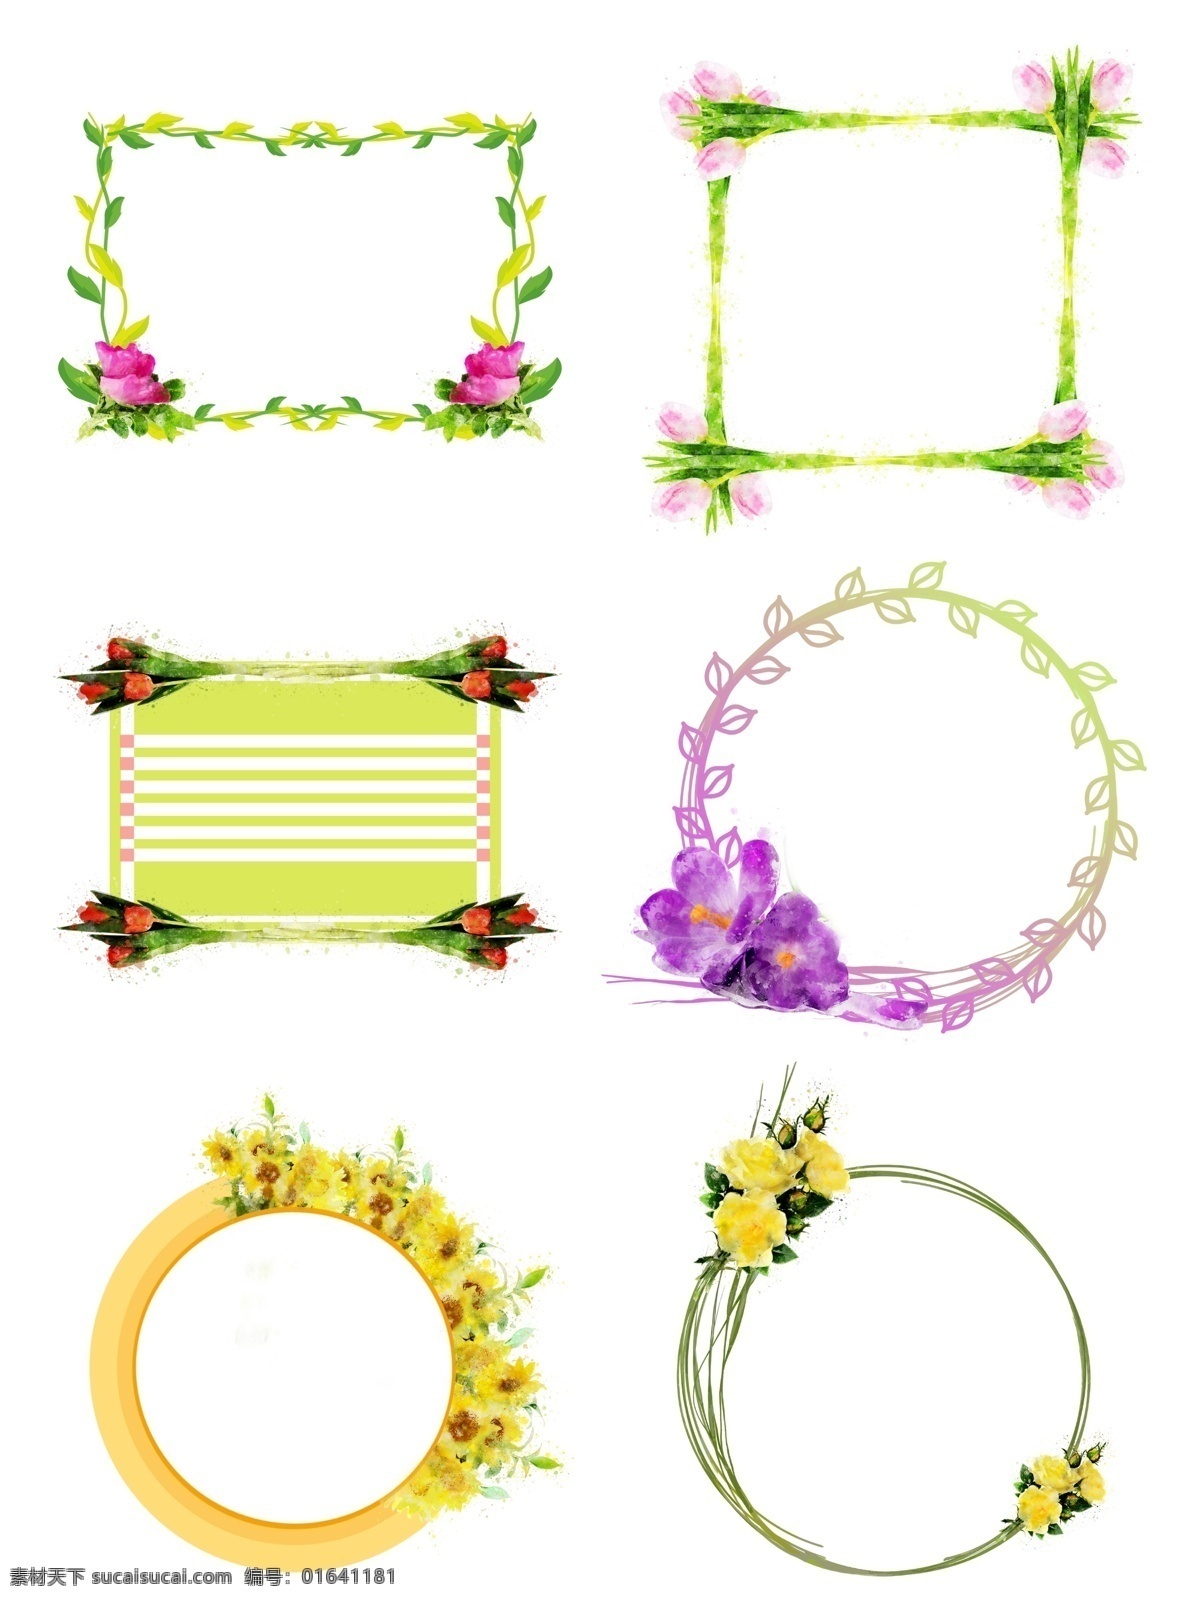 手绘 圆形 方形 植物 花卉 紫色 水彩 边框 元素 合集 黄色 原创 方形边框 圆形边框 植物边框 手绘边框